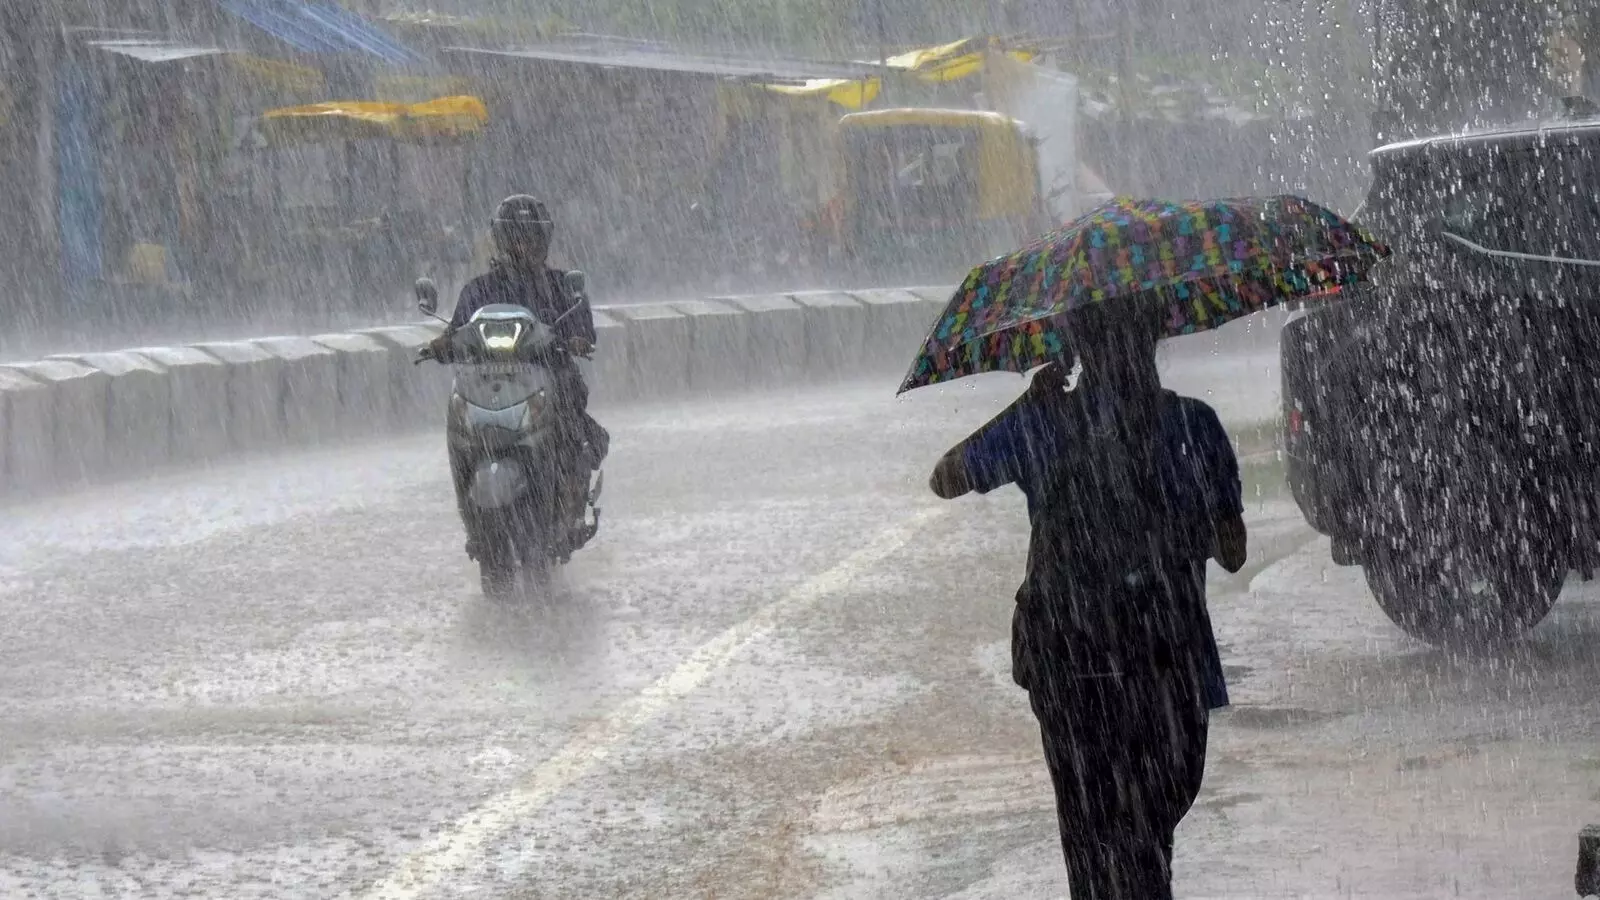 રાજસ્થાનમાં લો-પ્રેશરના લીધે ગુજરાતમાં વરસાદની સંભાવના, હવામાન વિભાગે કરી આગાહી